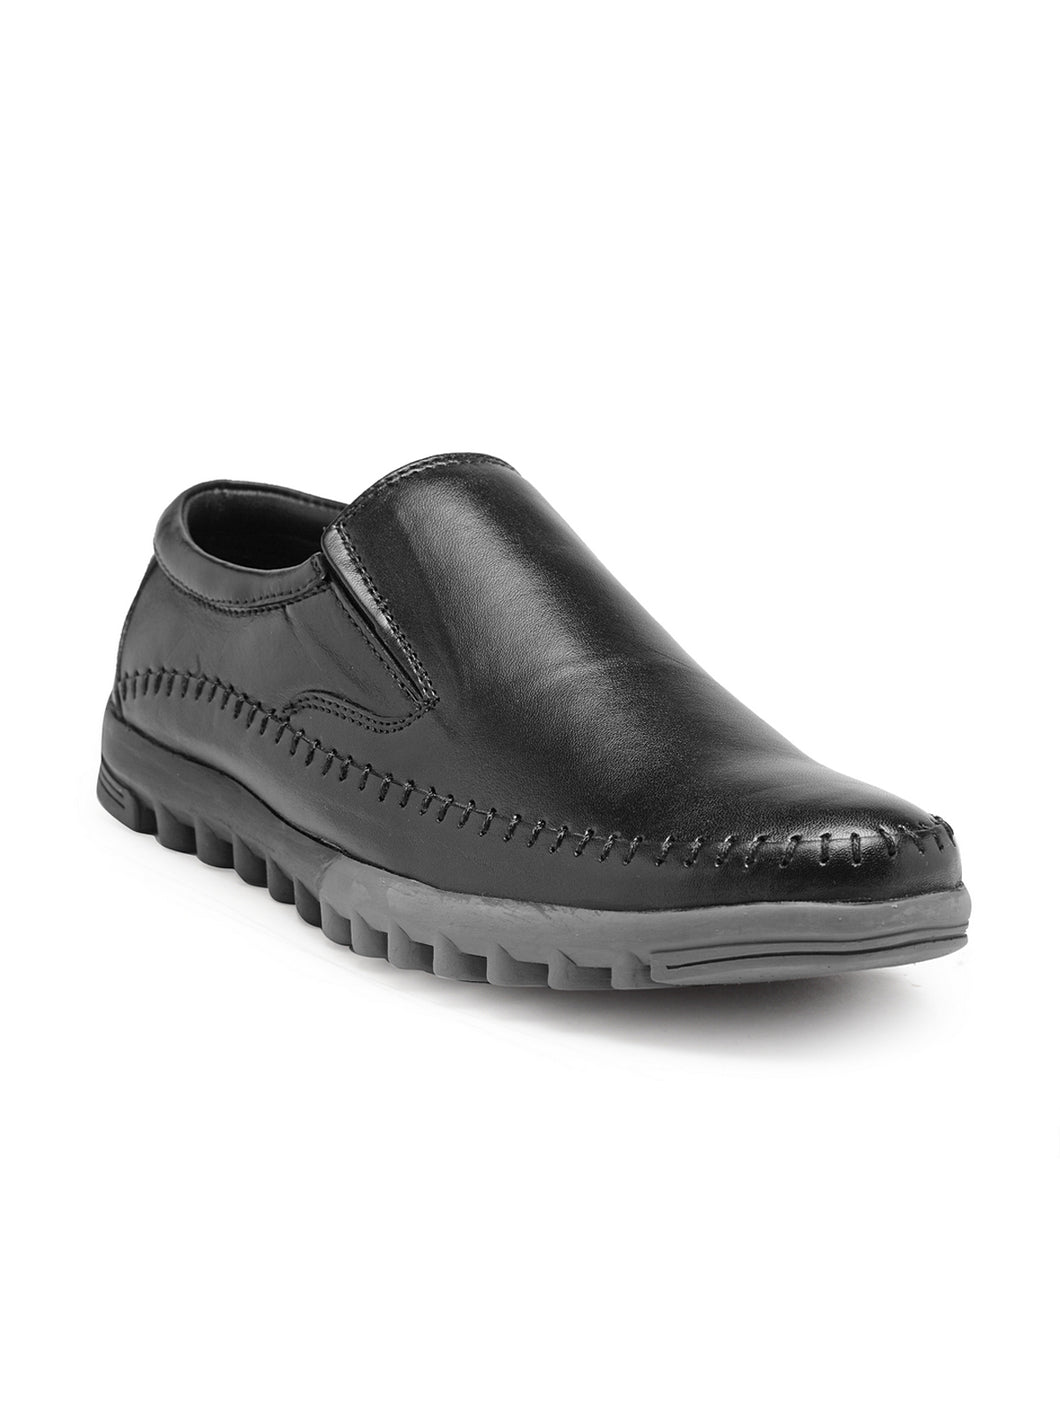 Teakwood Genuine Leather Black Loafers